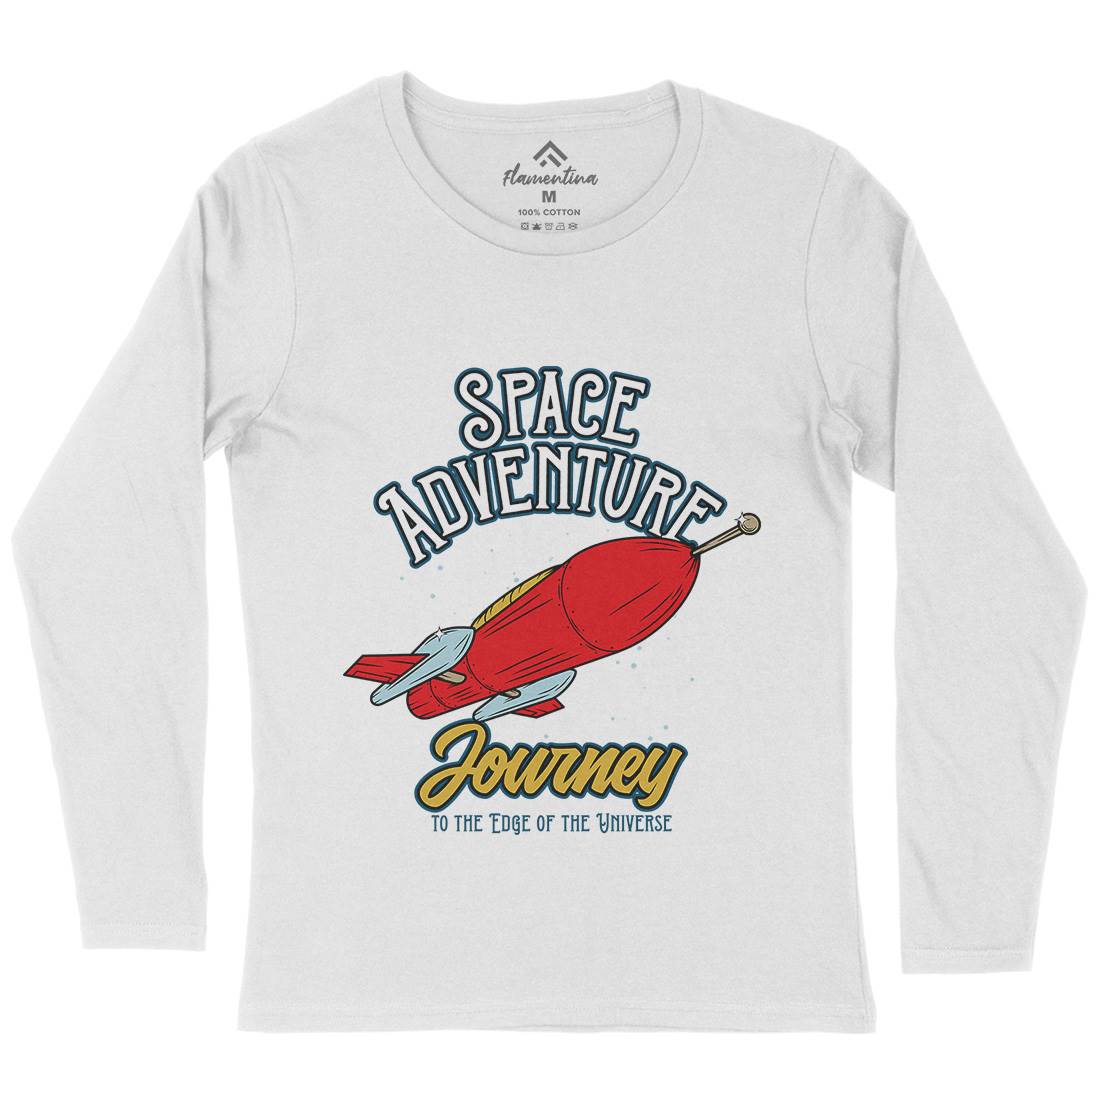 Adventure Womens Long Sleeve T-Shirt Space D978